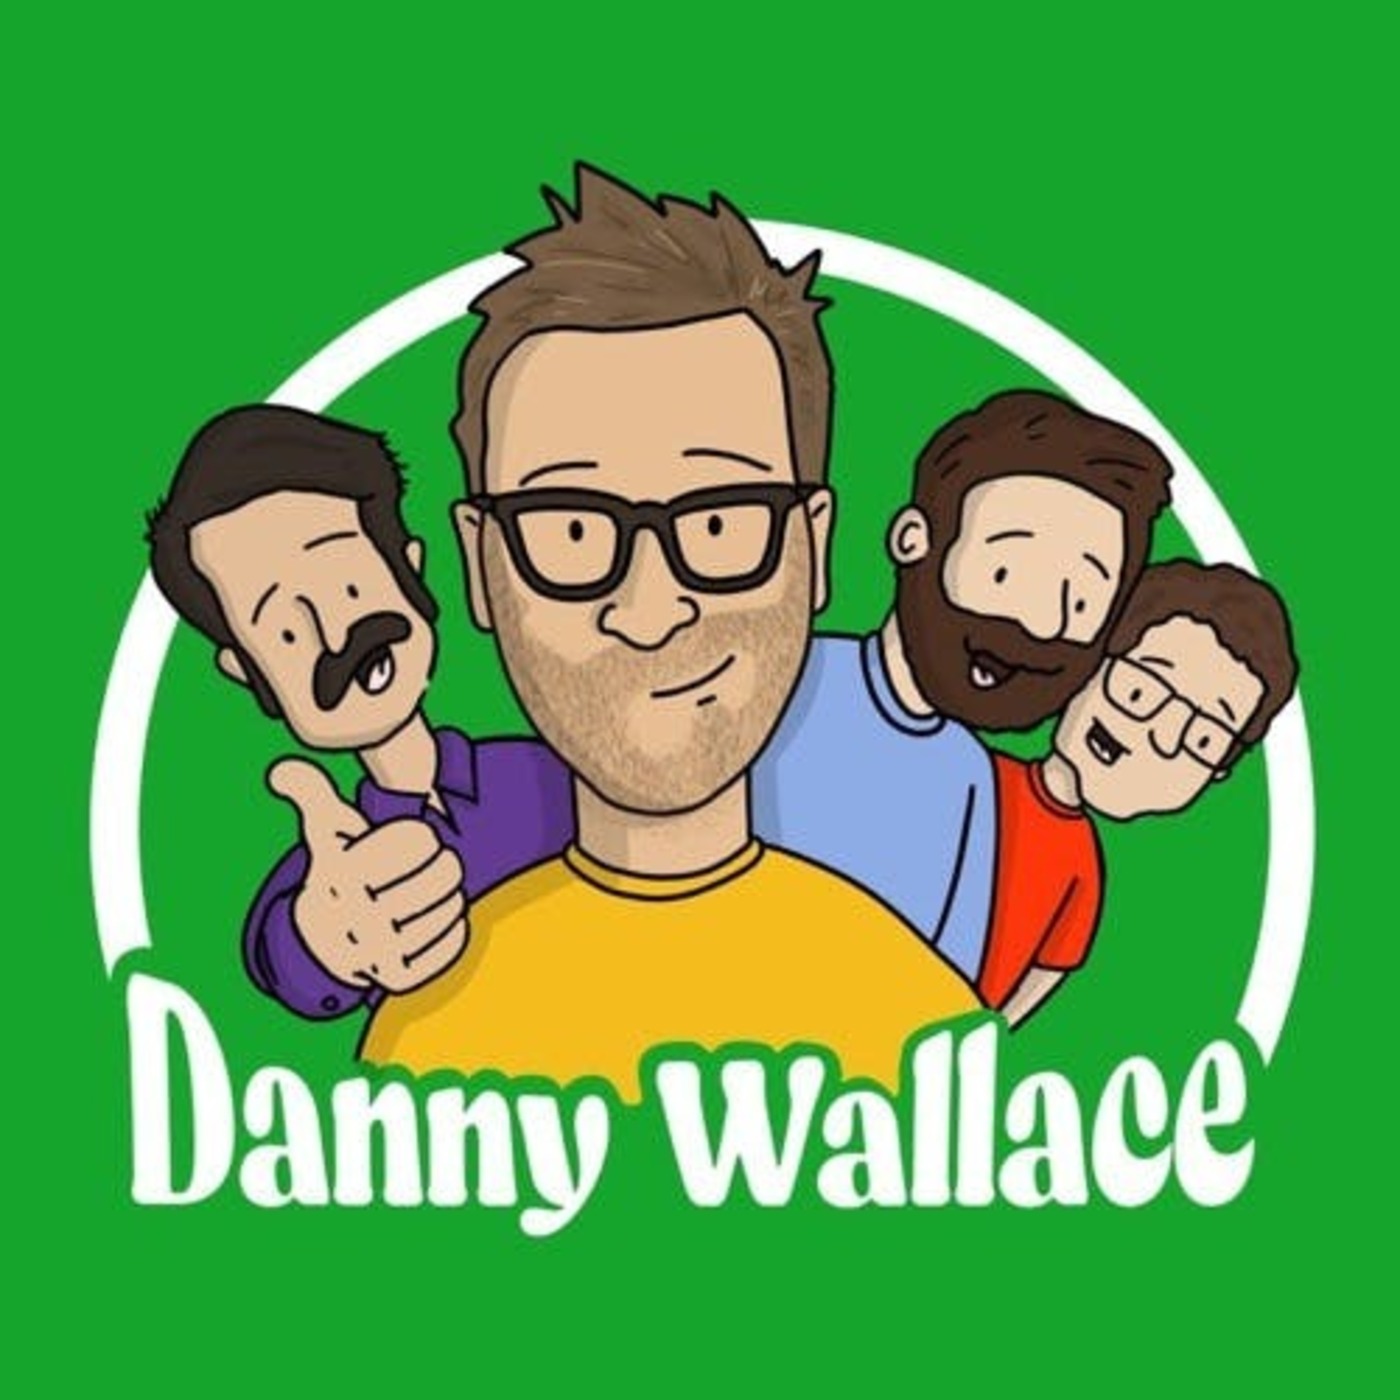 Episode 214, Part 2: Danny Wallace